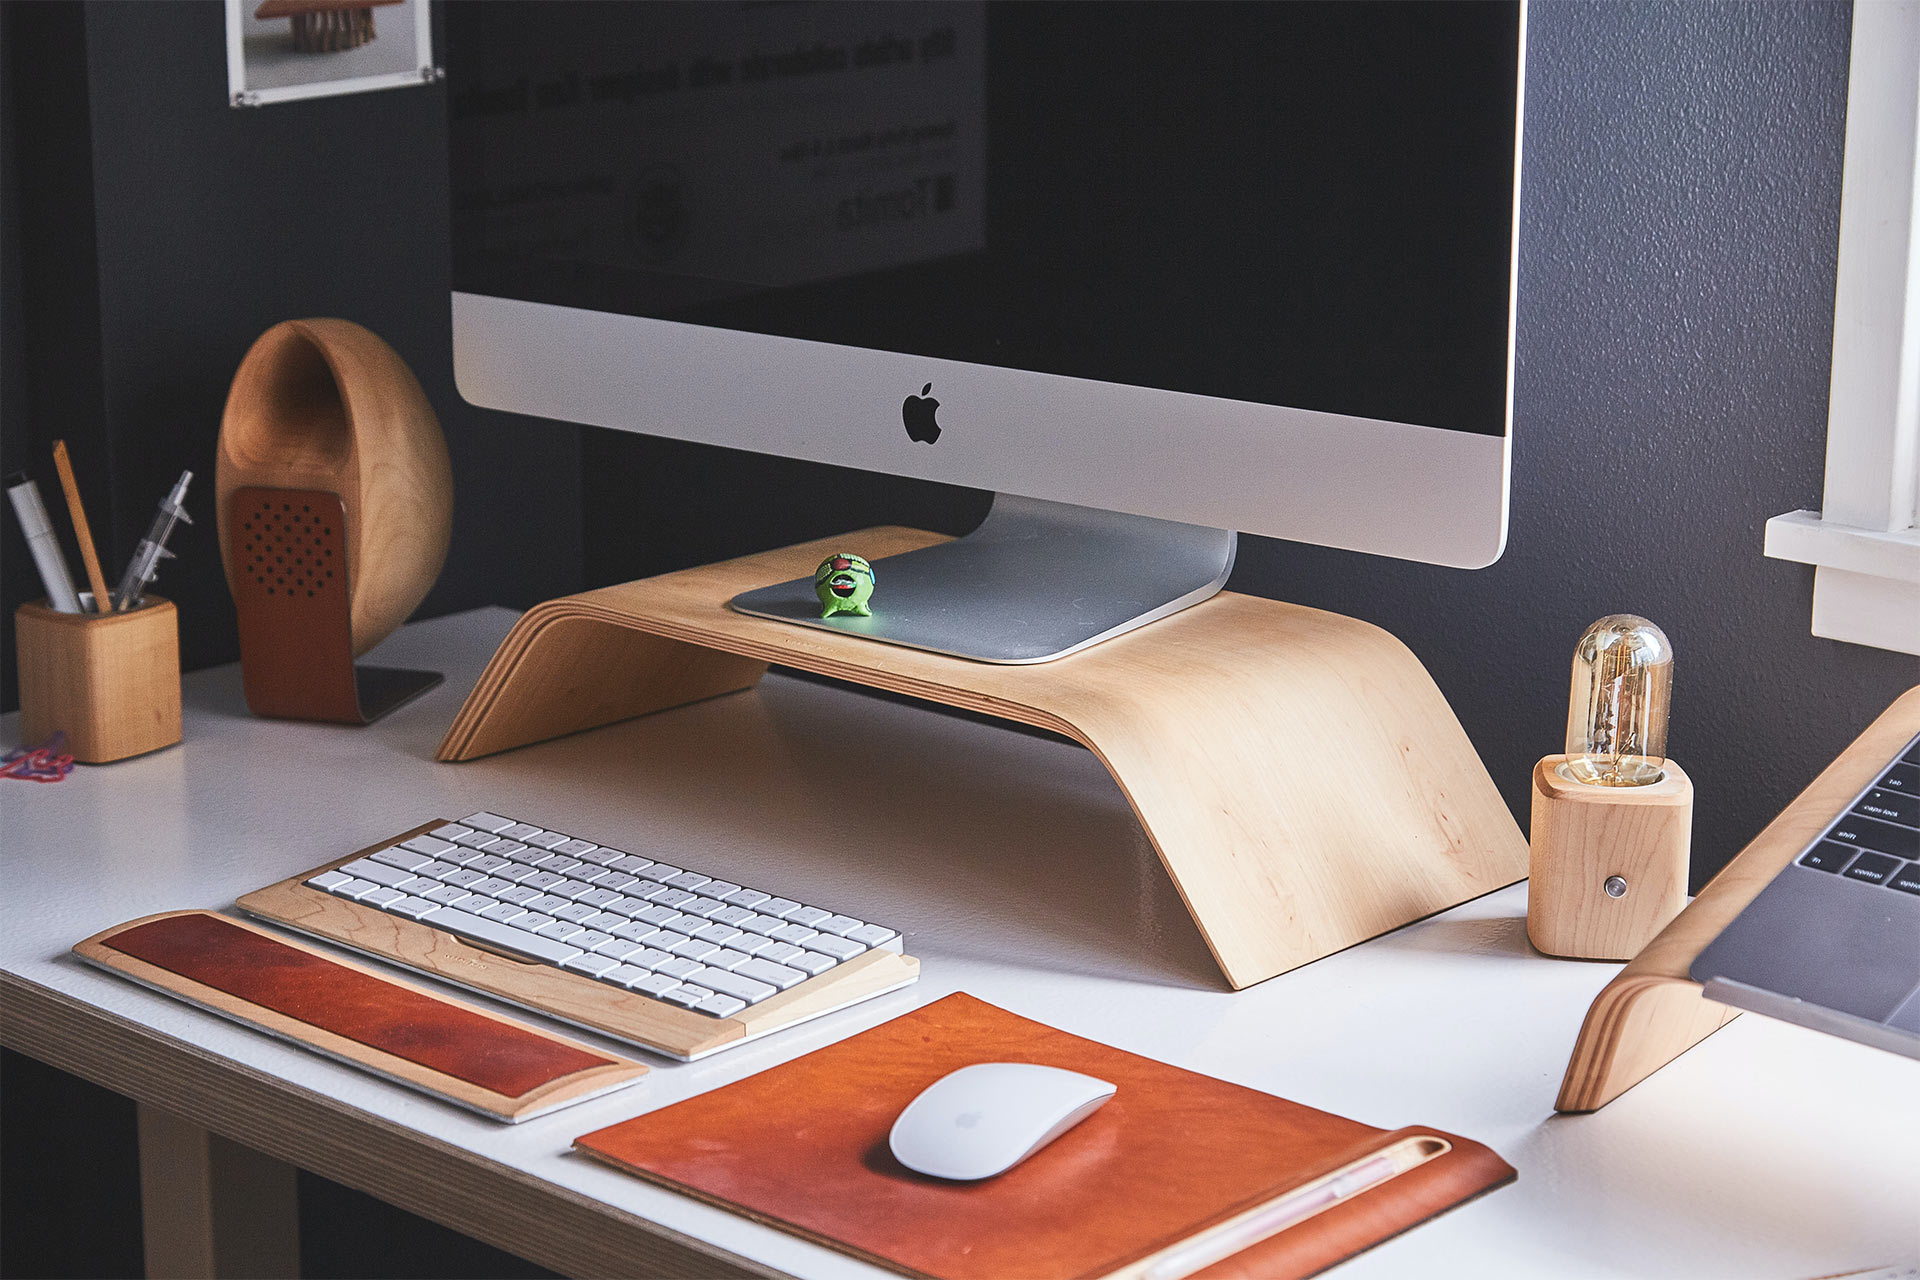 Un iMac sobre un soporte de madera en un escritorio con teclado y mouse inalámbricos.